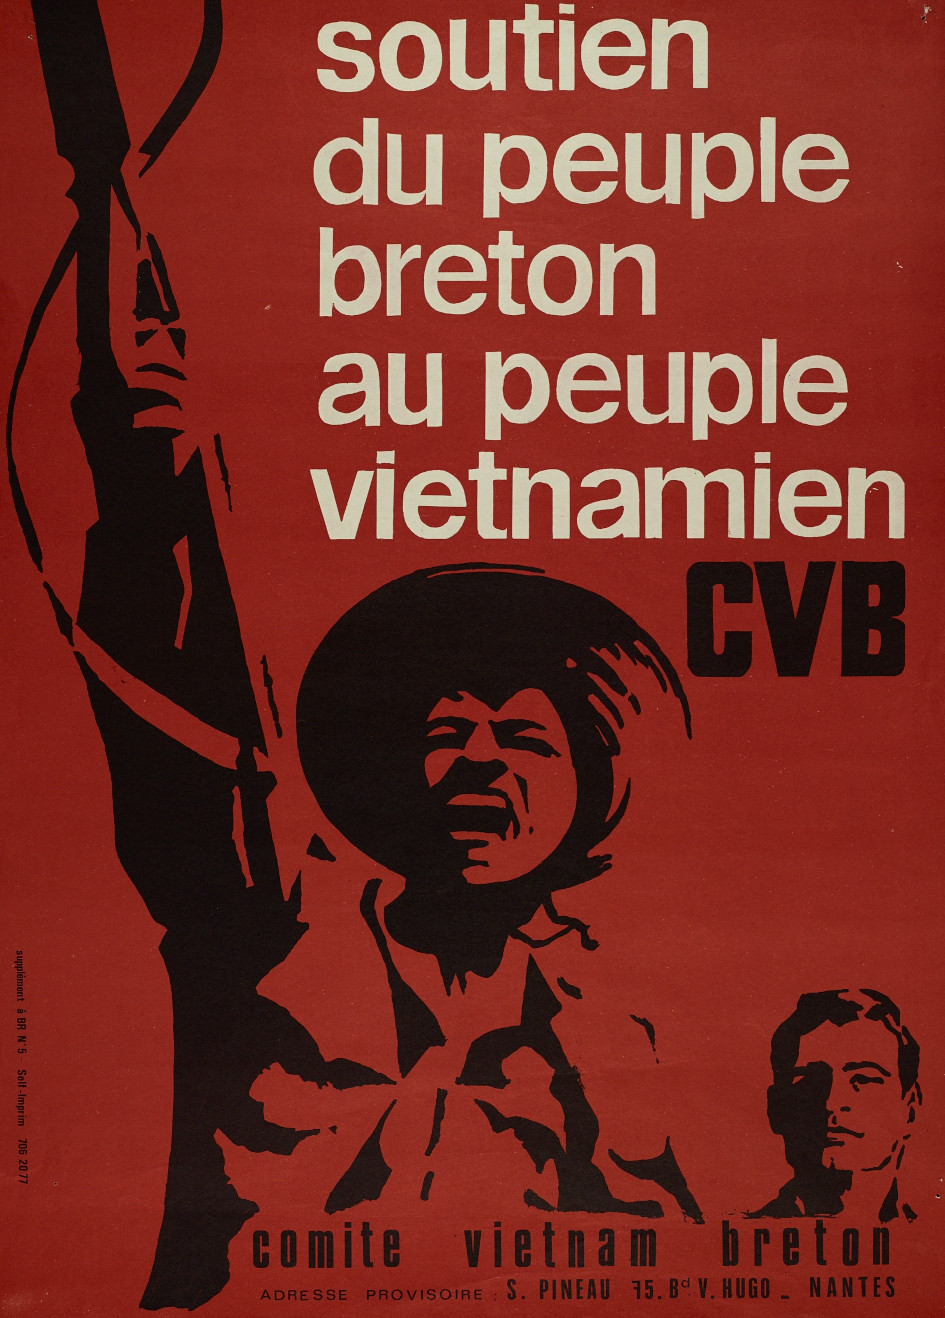 Soutien du peuple breton au peuple vietnamien, affiche anonyme (sans date). Collections Musée de Bretagne, Rennes : 981.0058.303, CC-BY-NC-ND.